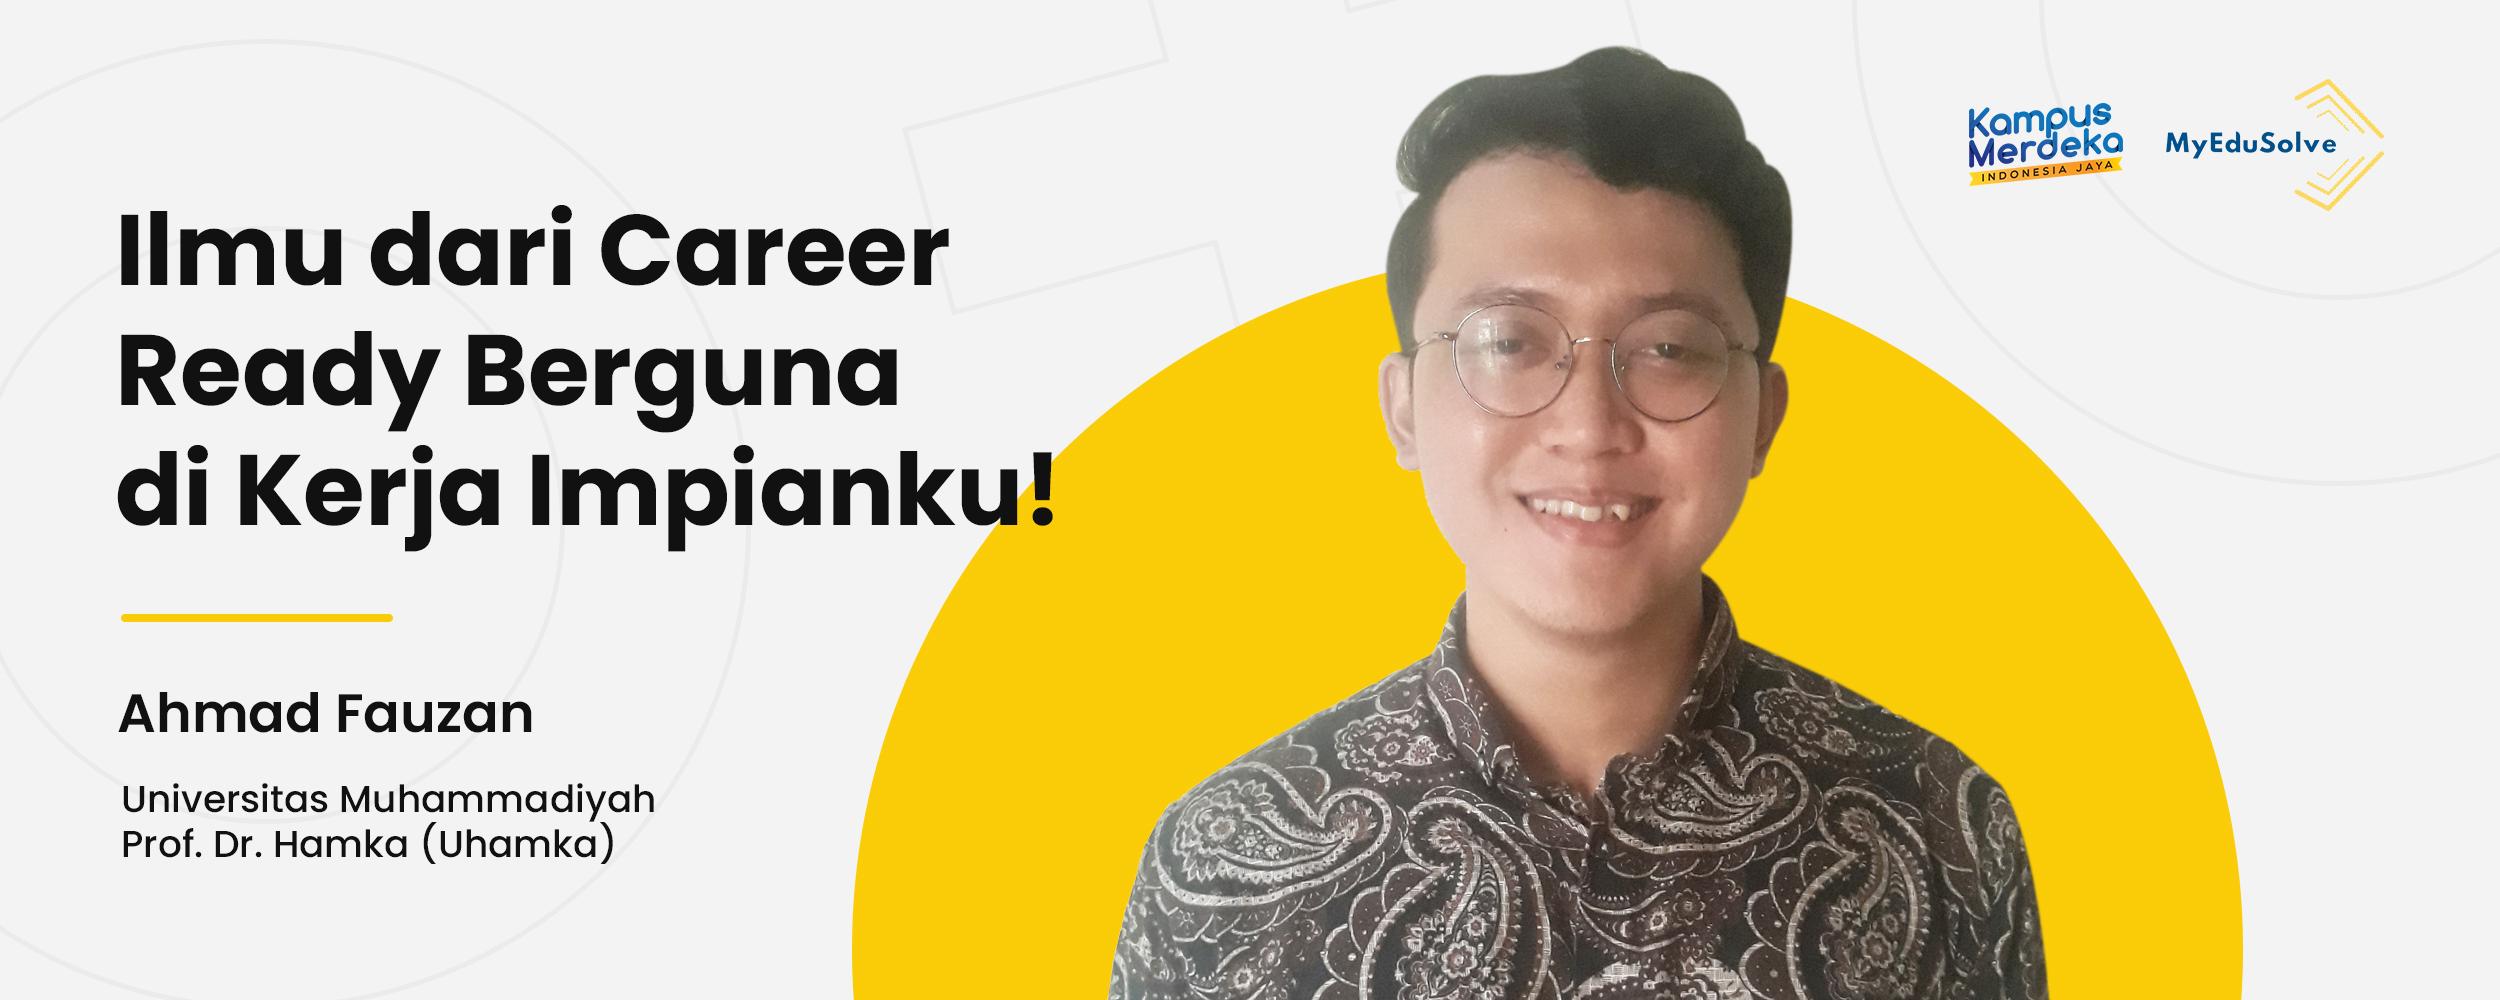 Makin Siap Terjun Dunia Kerja, Ahmad Fauzan: Ilmu dari Career Ready Berguna di Kerja Impianku! cover